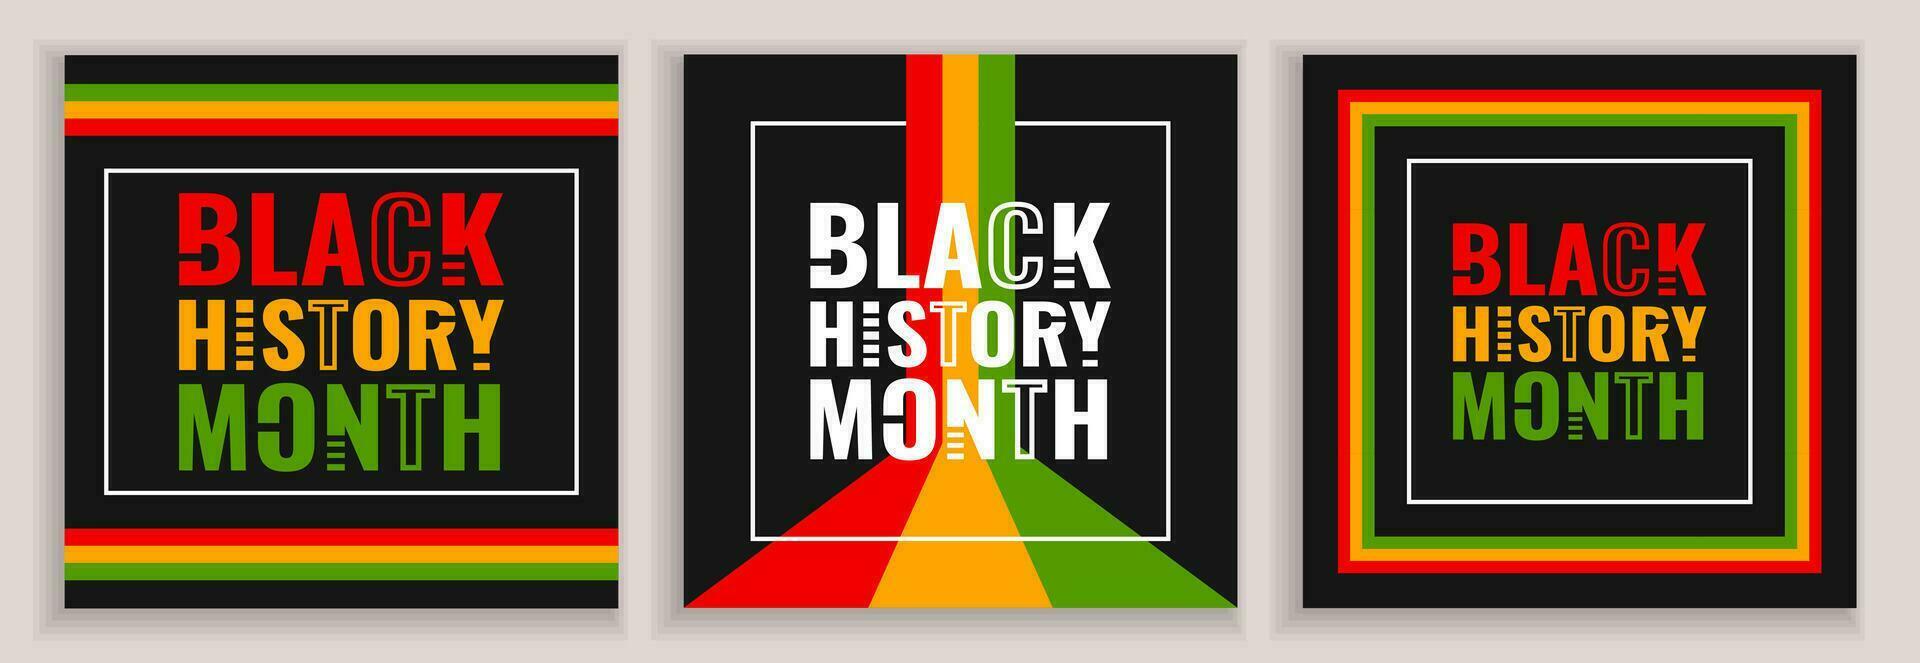 svart historia månad fyrkant posters med linje dekoration, ljus färger och text på en svart bakgrund. vektor